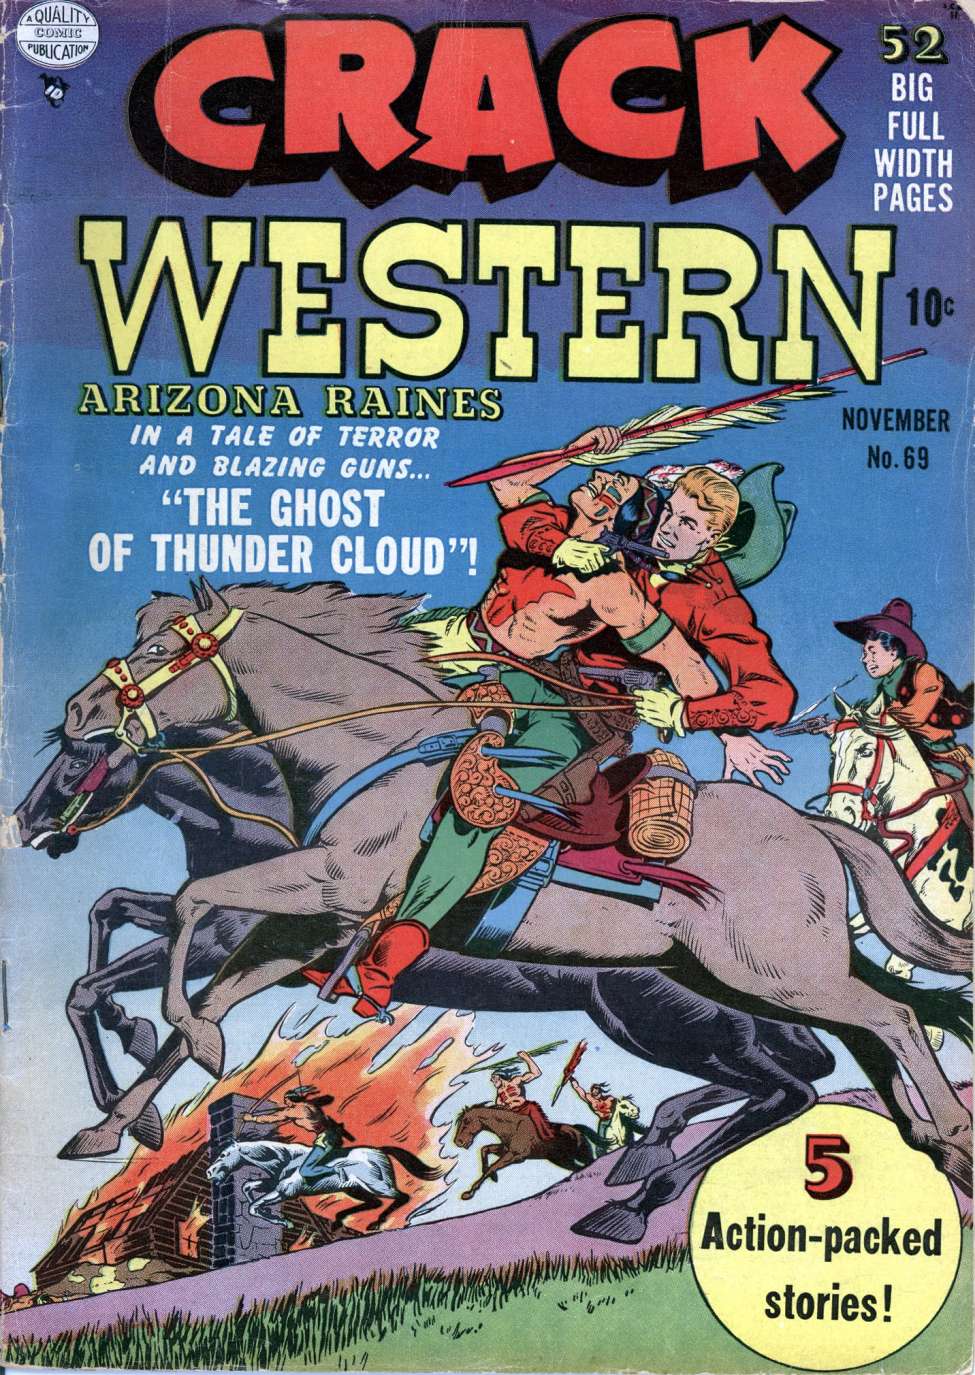 Book Cover For Crack Western 69 (alt) - Version 2